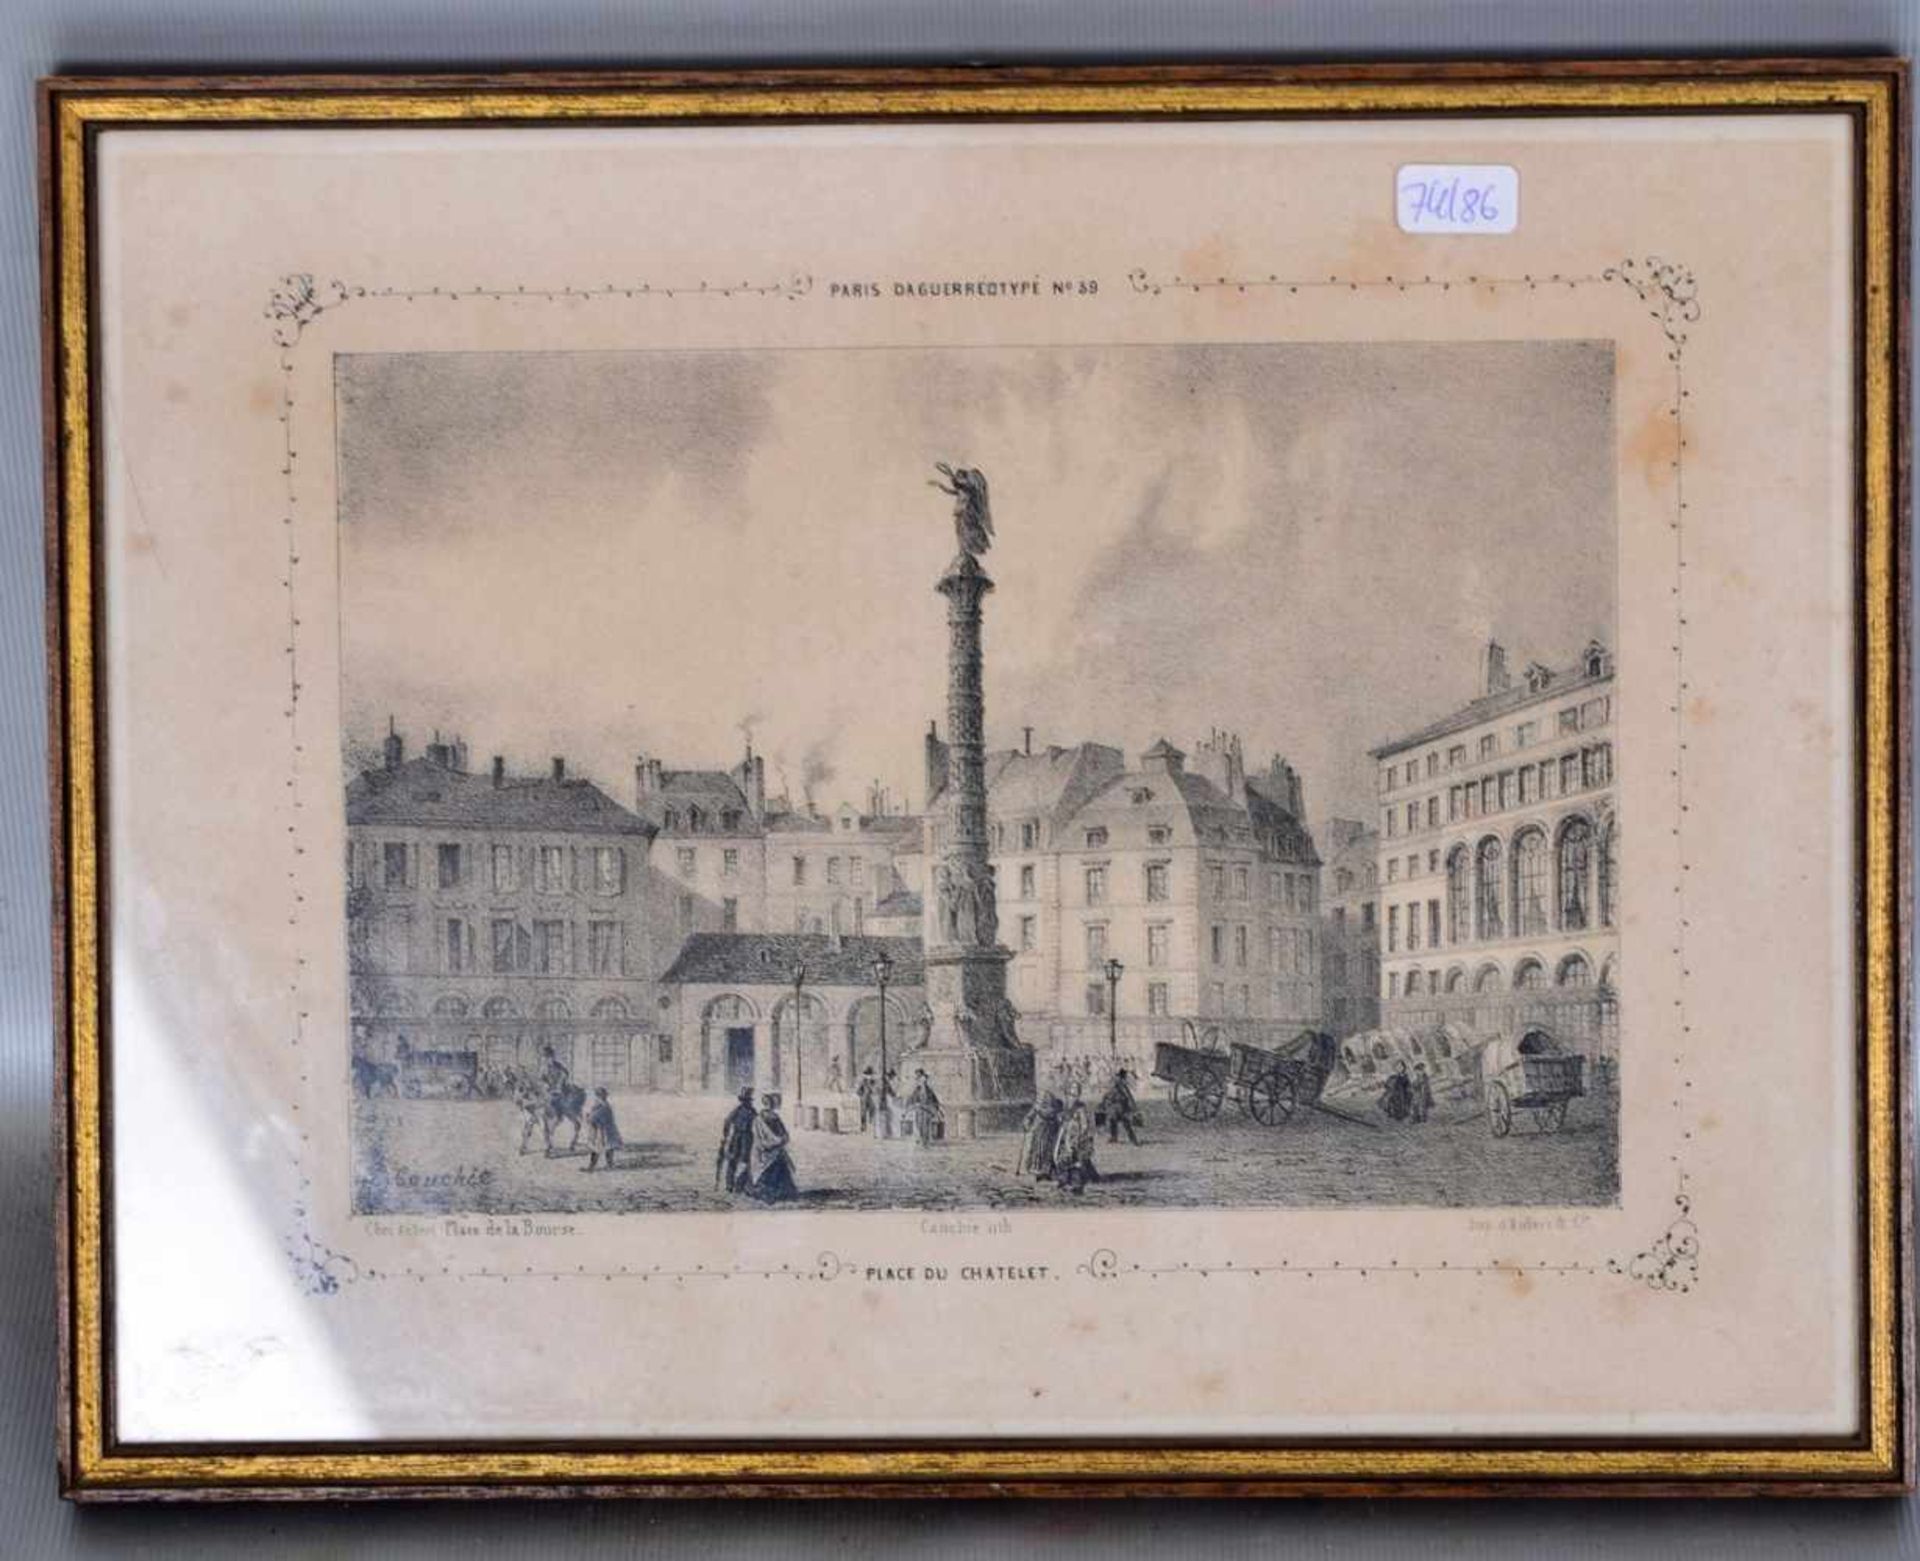 HolzschnittTeilansicht von Paris, 13 X 19 cm, im Rahmen, um 1900